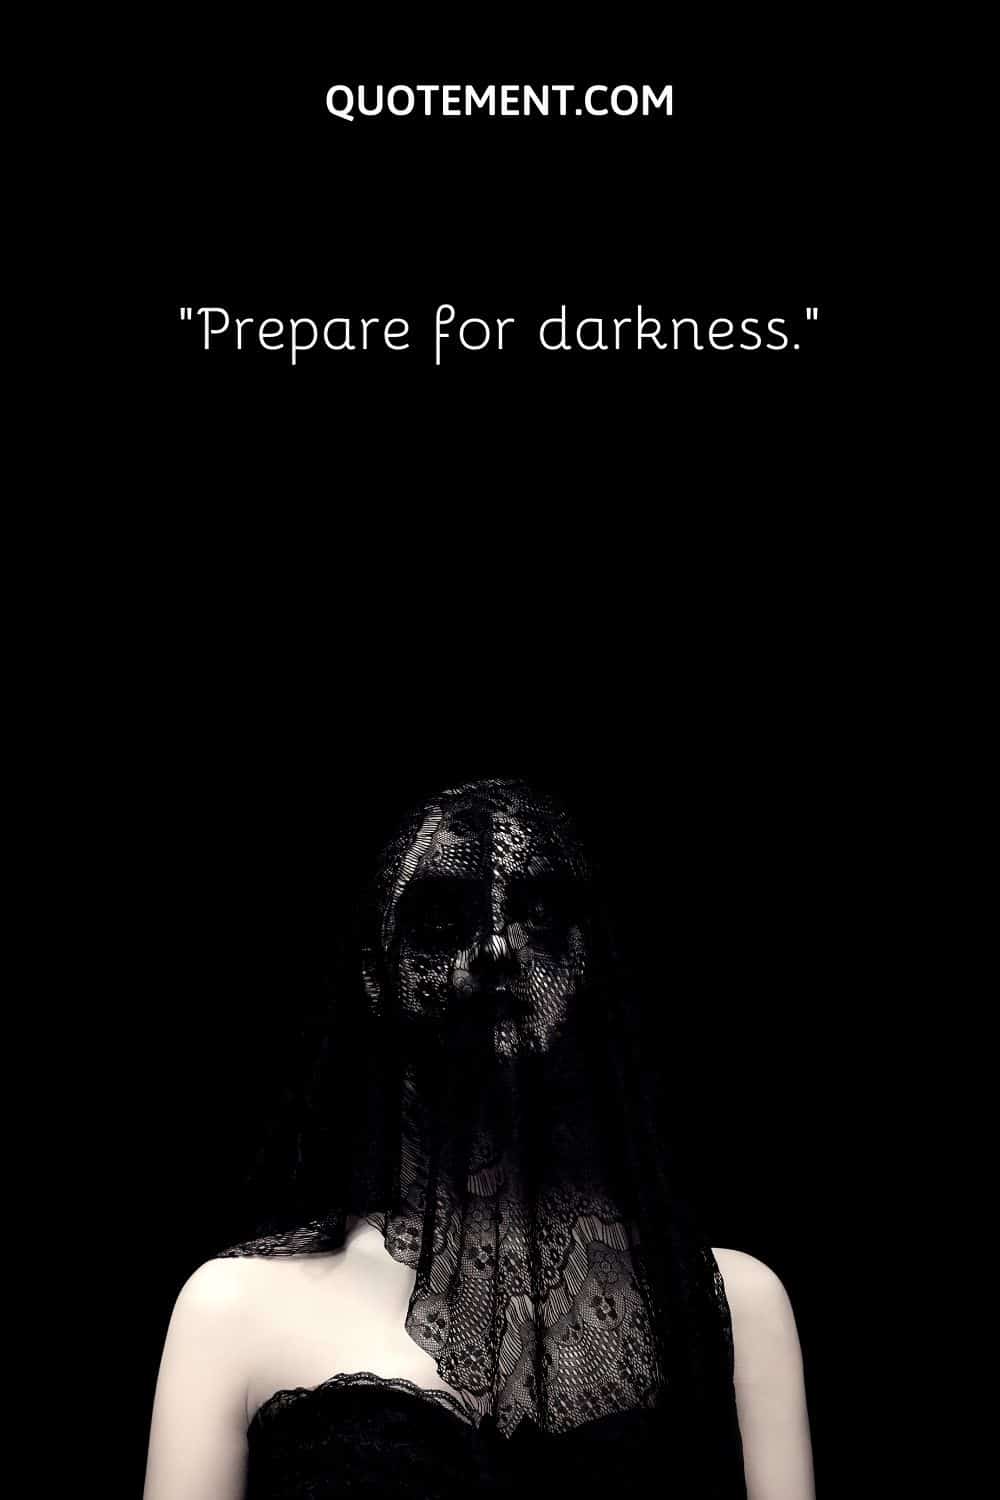 Prepare for darkness